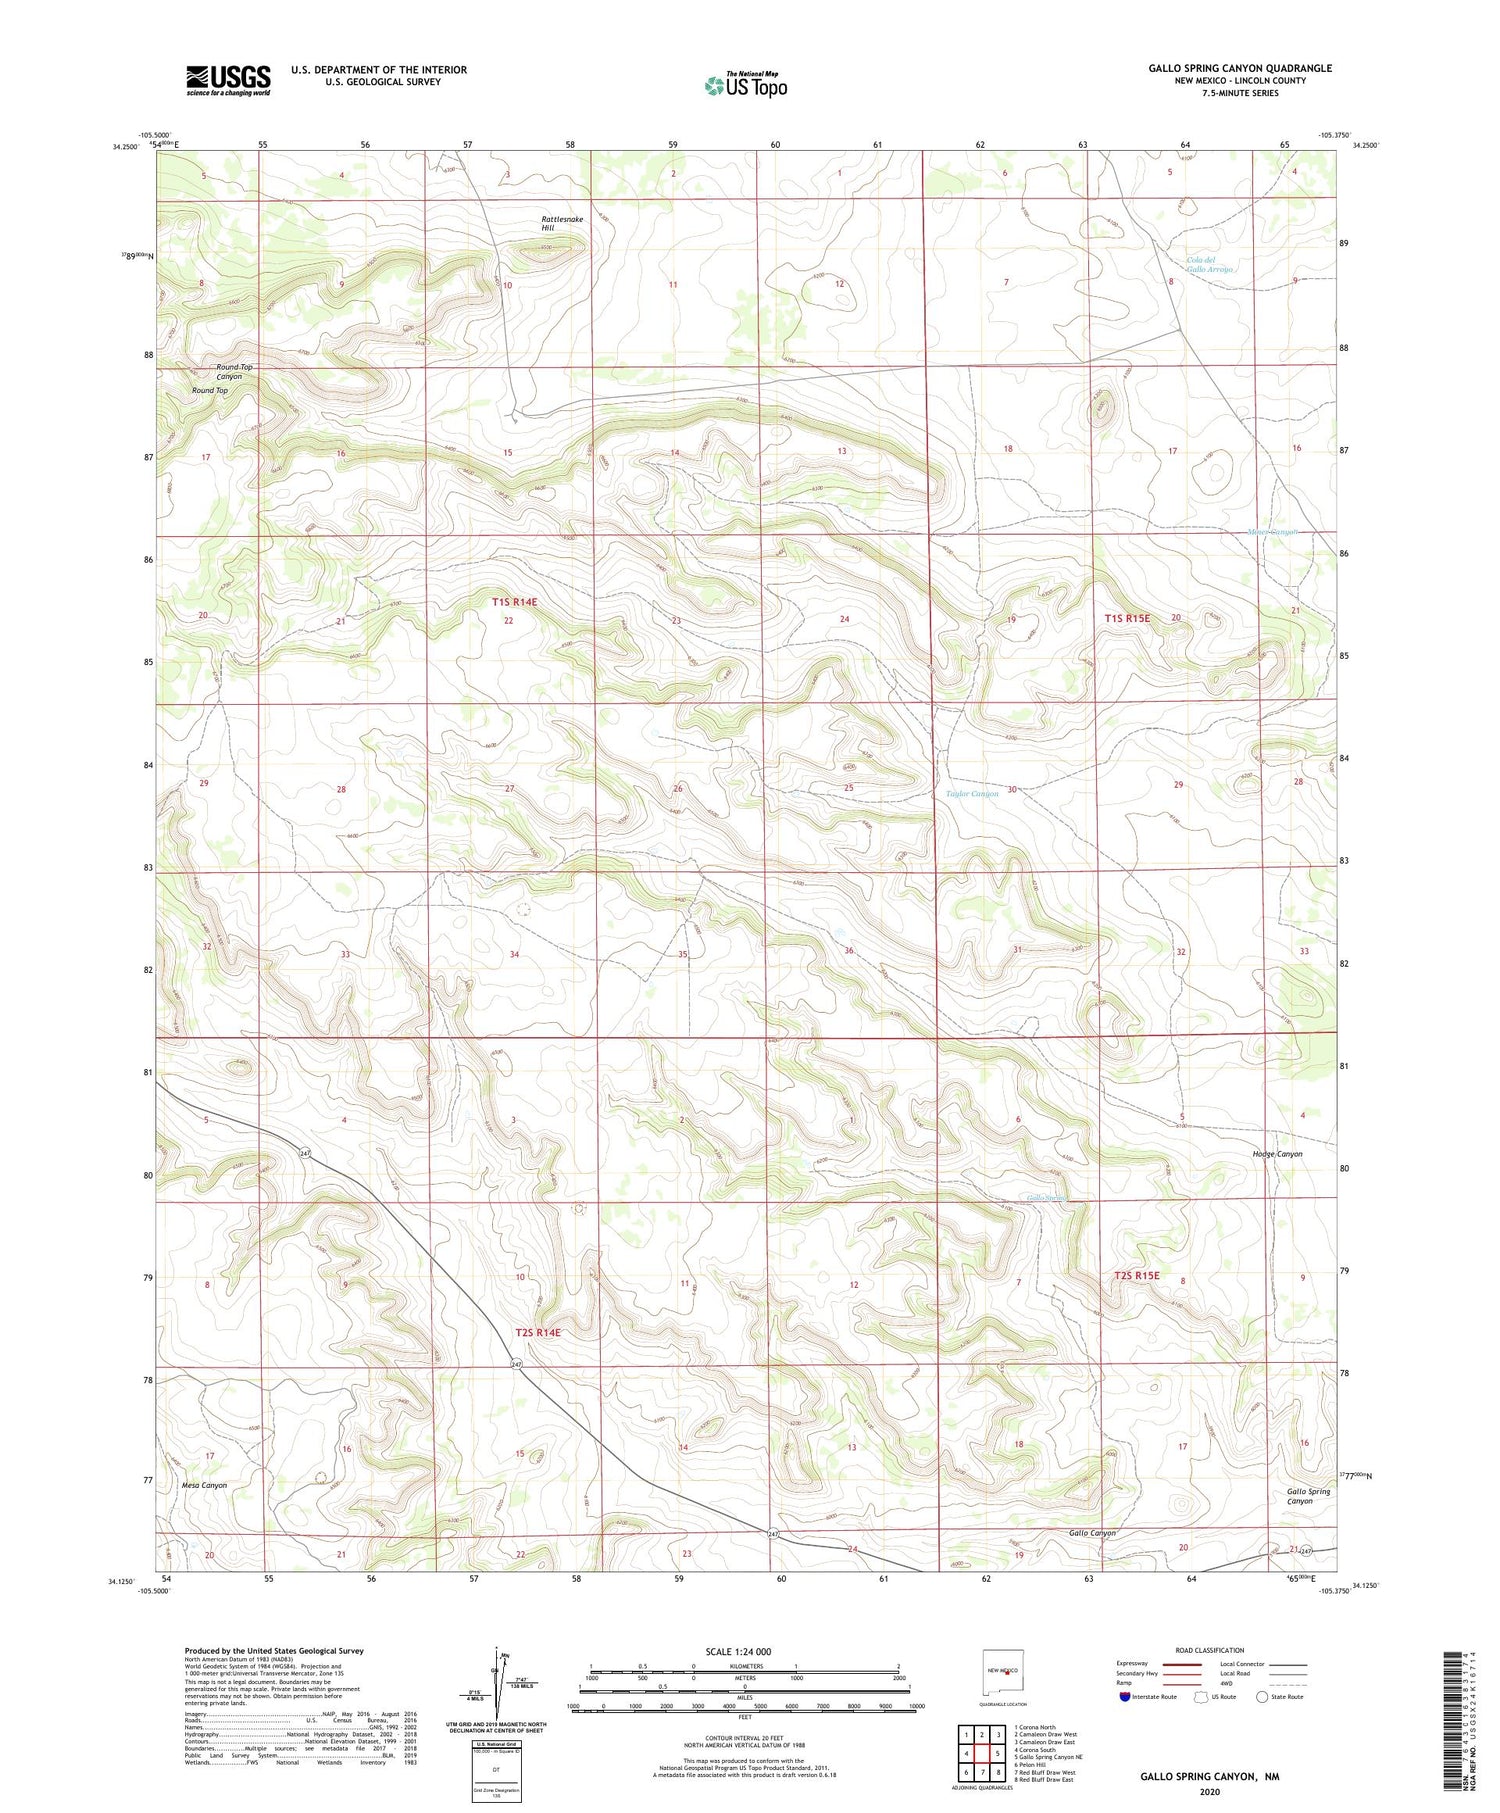 Gallo Spring Canyon New Mexico US Topo Map Image